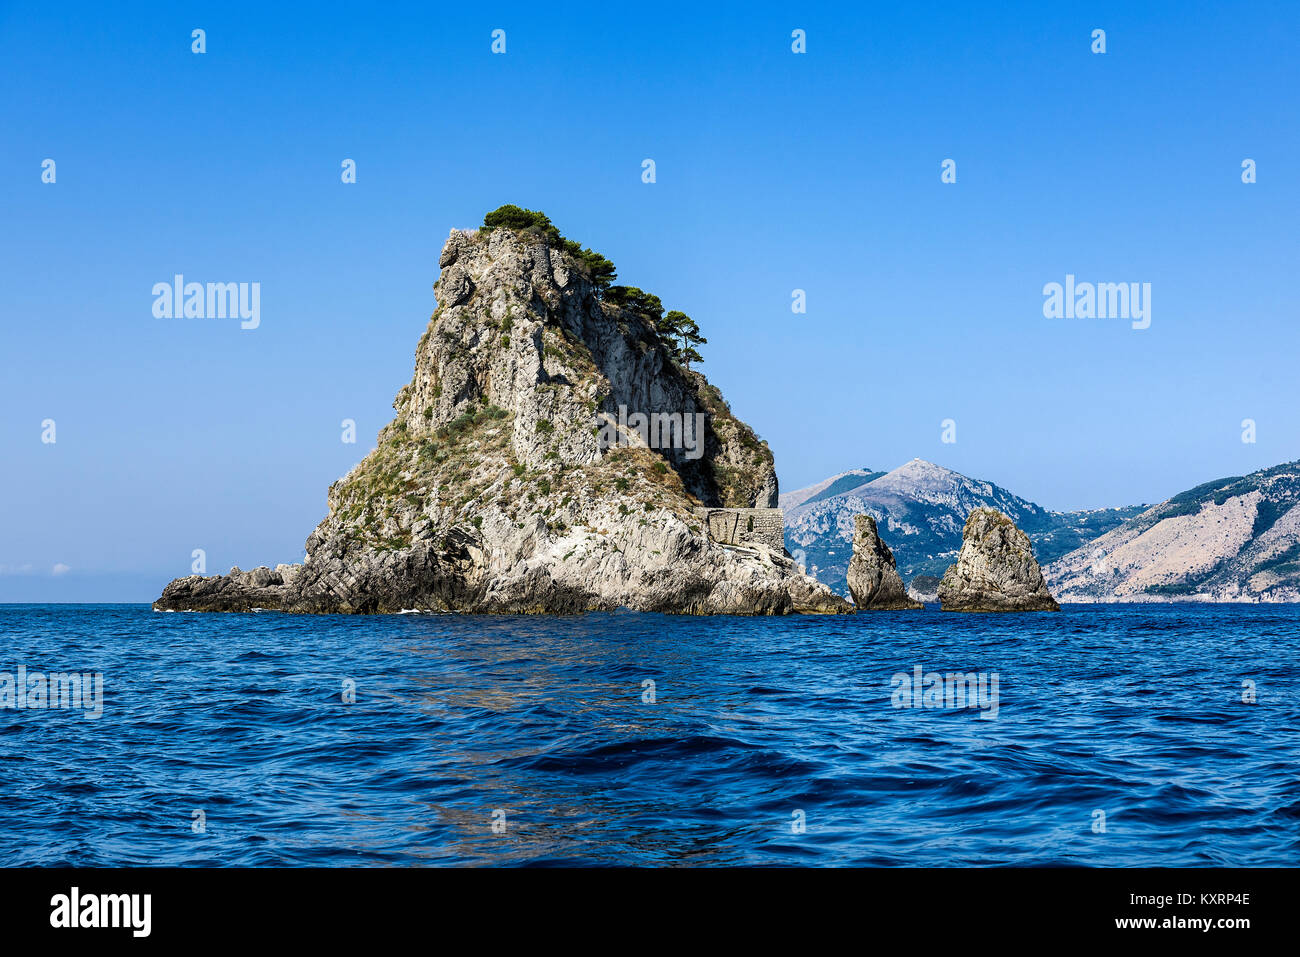 Uninhabitied Petite île au large de l'île de Capri, Italie. Banque D'Images